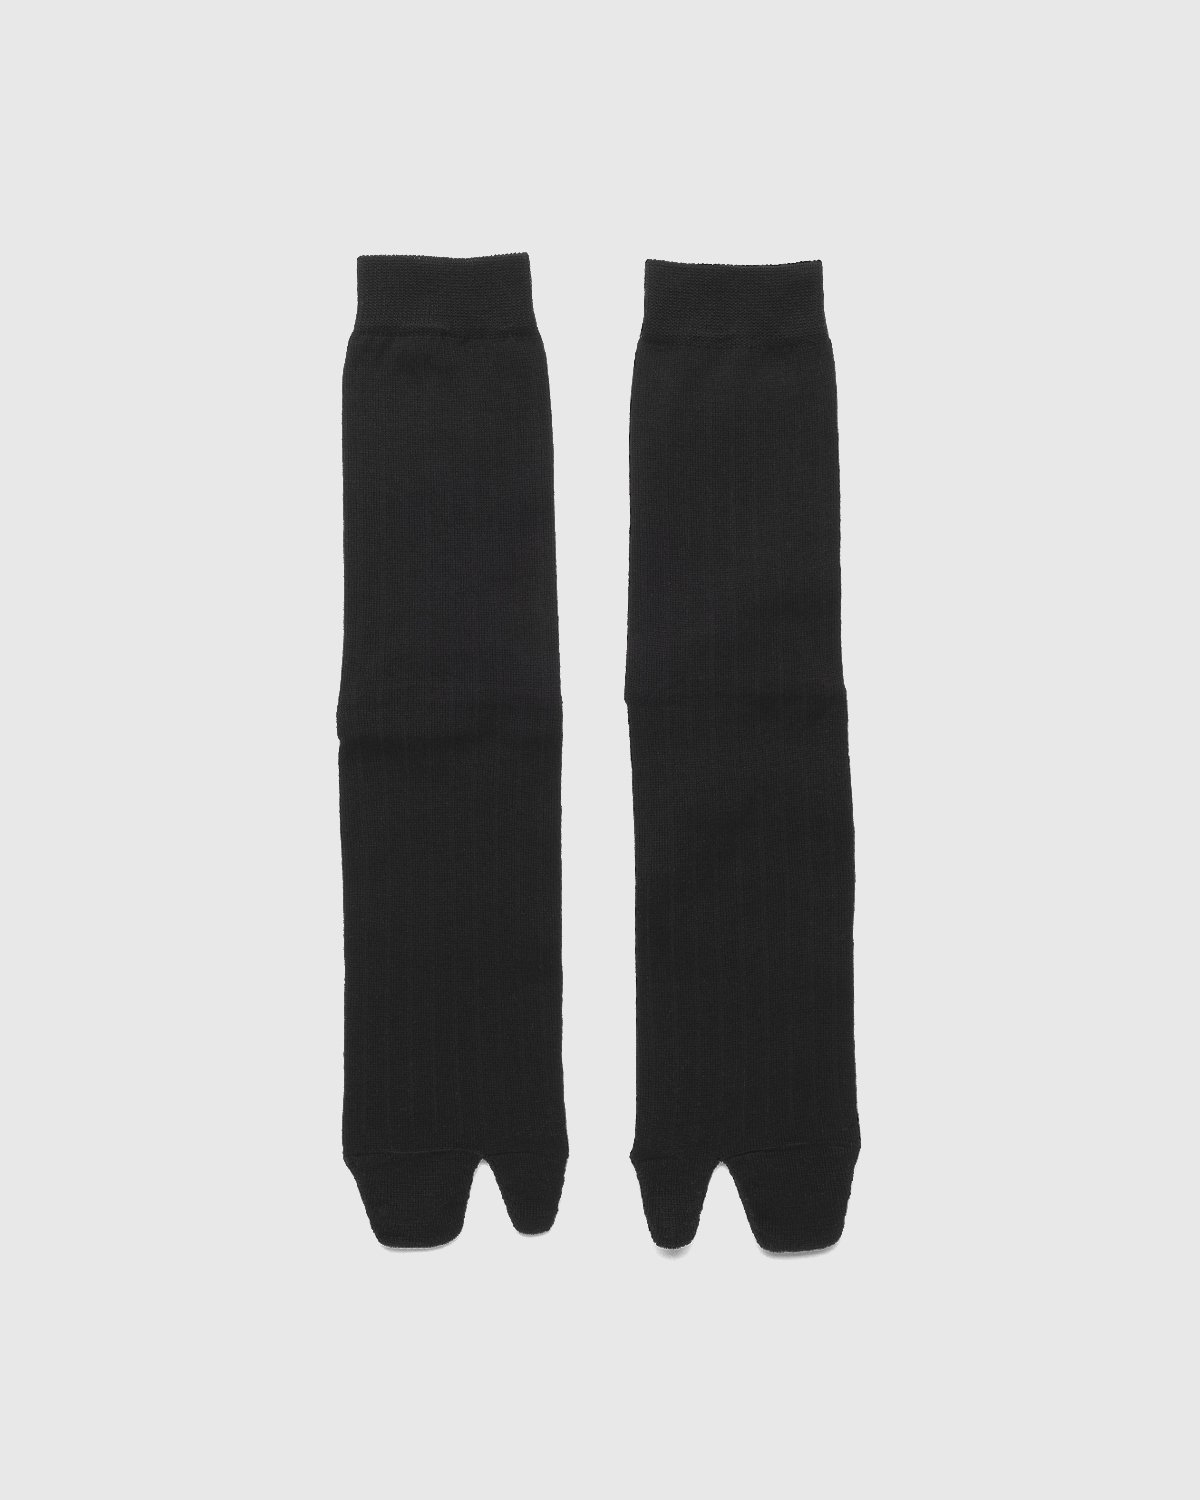 Maison Margiela - Tabi Socks Black - Accessories - Black - Image 2